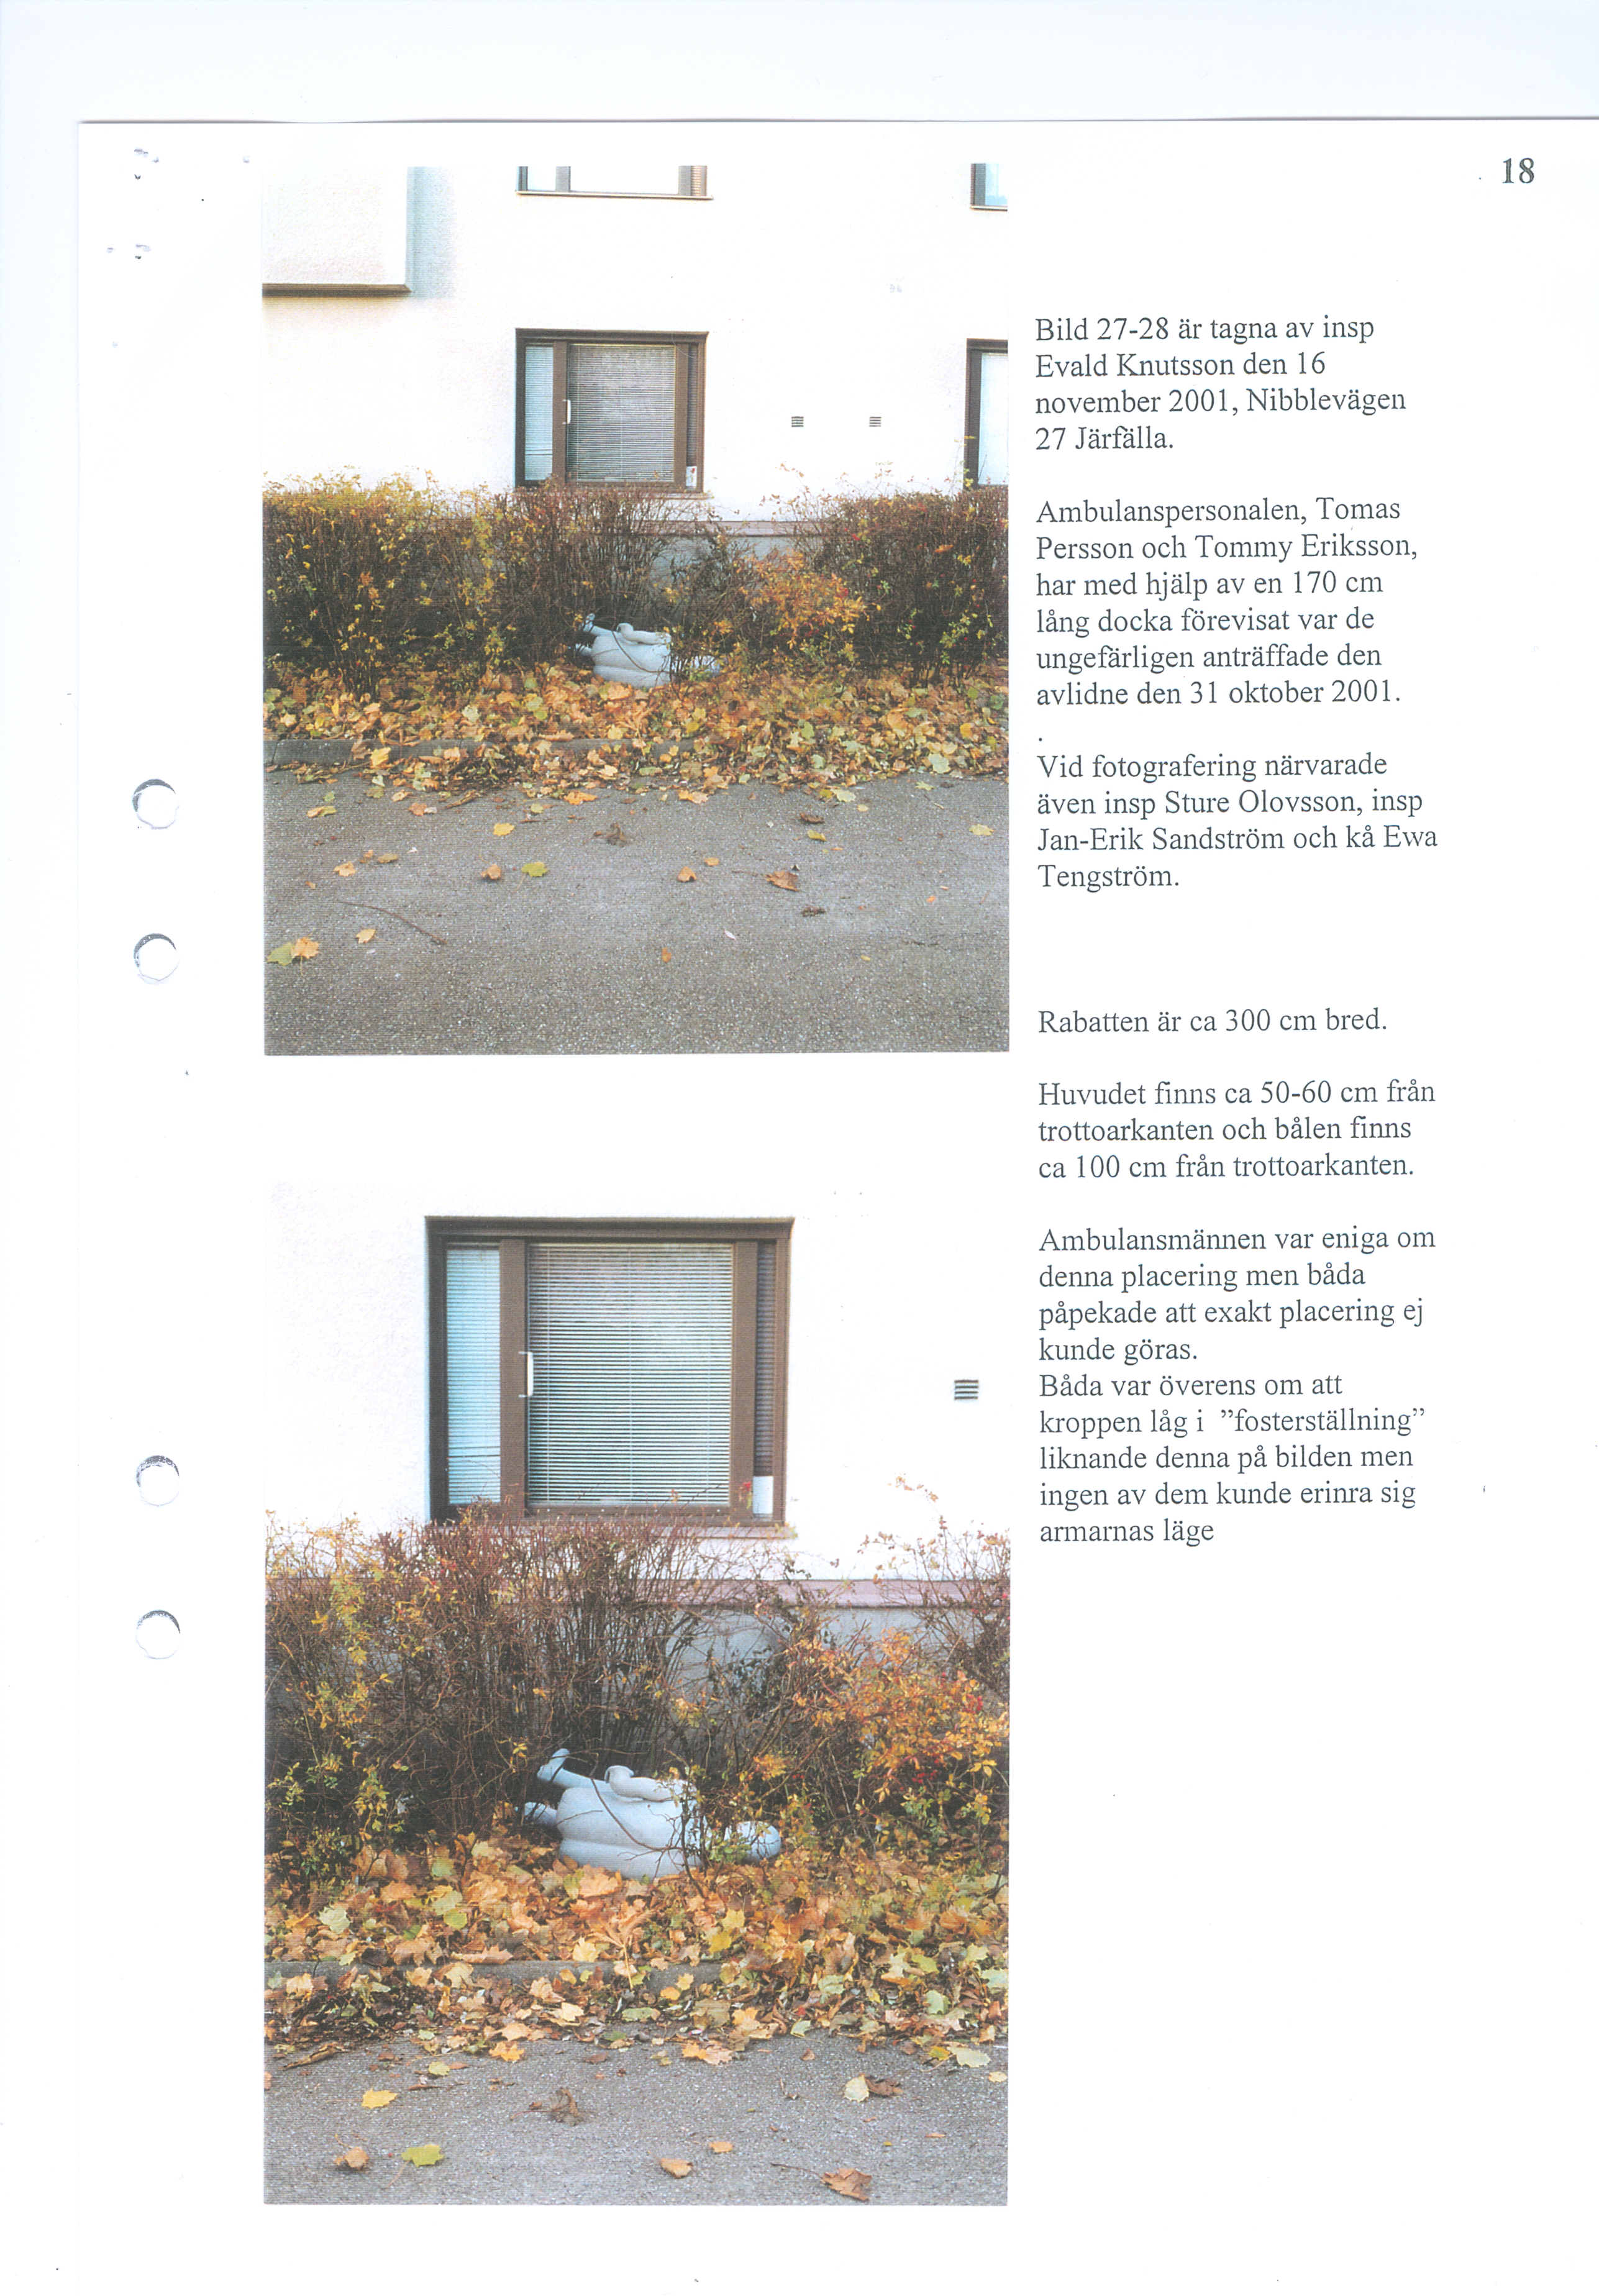 Bild 27-28 al' tagna av insp Evald Knutsson den 16 november 2001, Nibblevagen 27 JiirHilla. Ambulanspersonalen, Tomas Persson oeh Tommy Eriksson, har med hjiilp av en 170 em lfl.